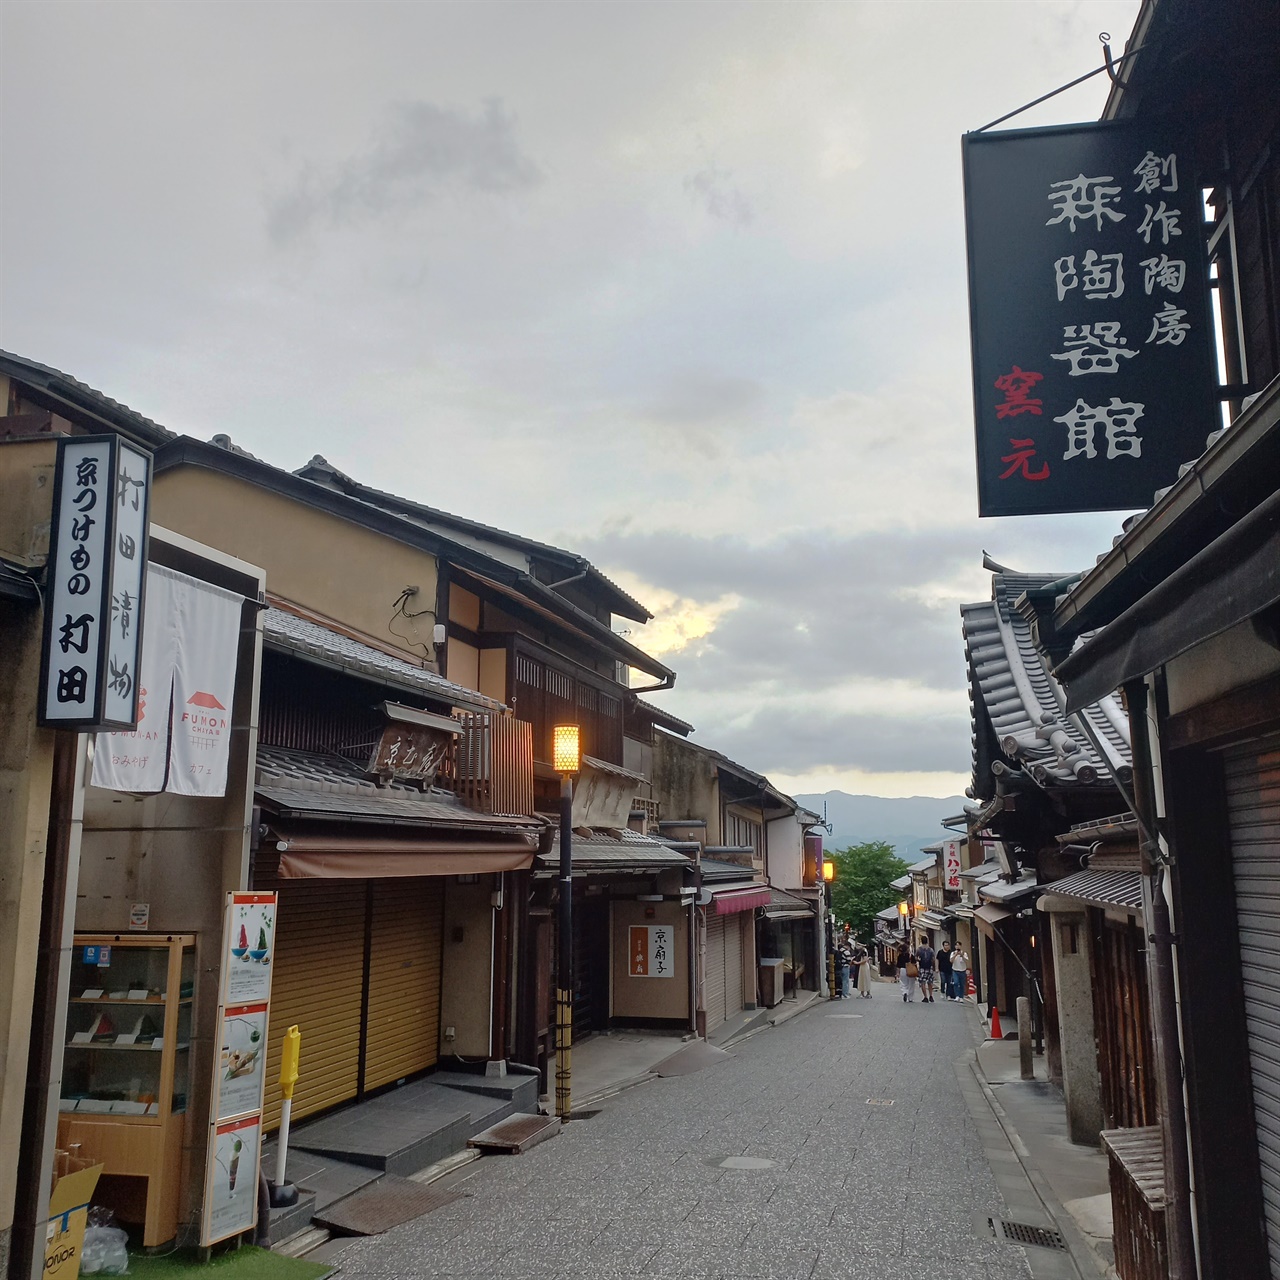 오사카 인근 교토를 여행하며 만난 낯선 골목길.
